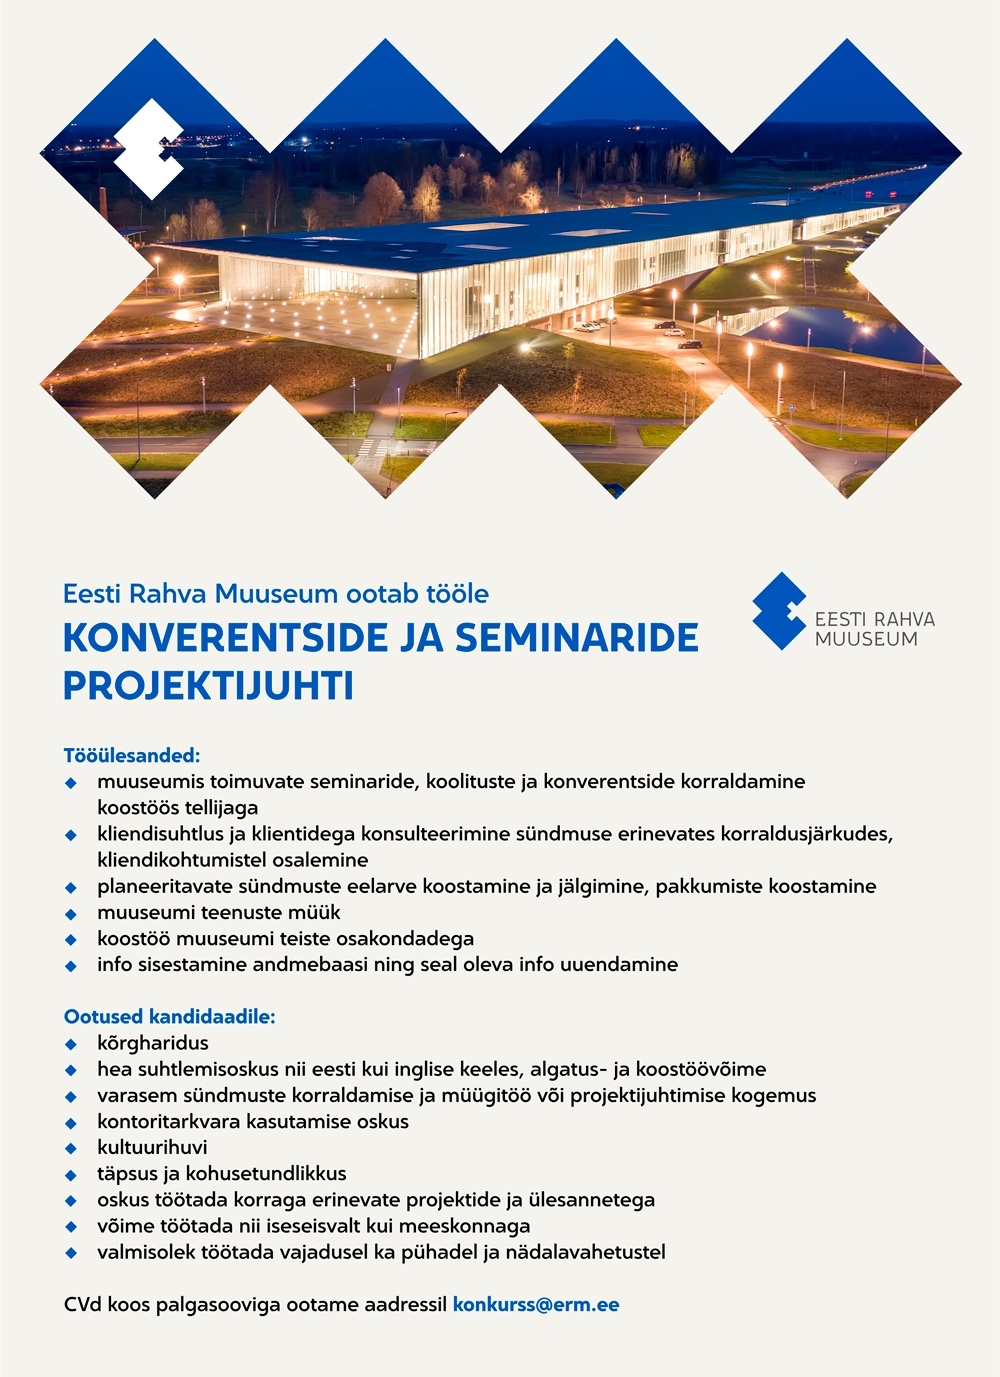 Eesti Rahva Muuseum Konverentside ja seminaride projektijuht